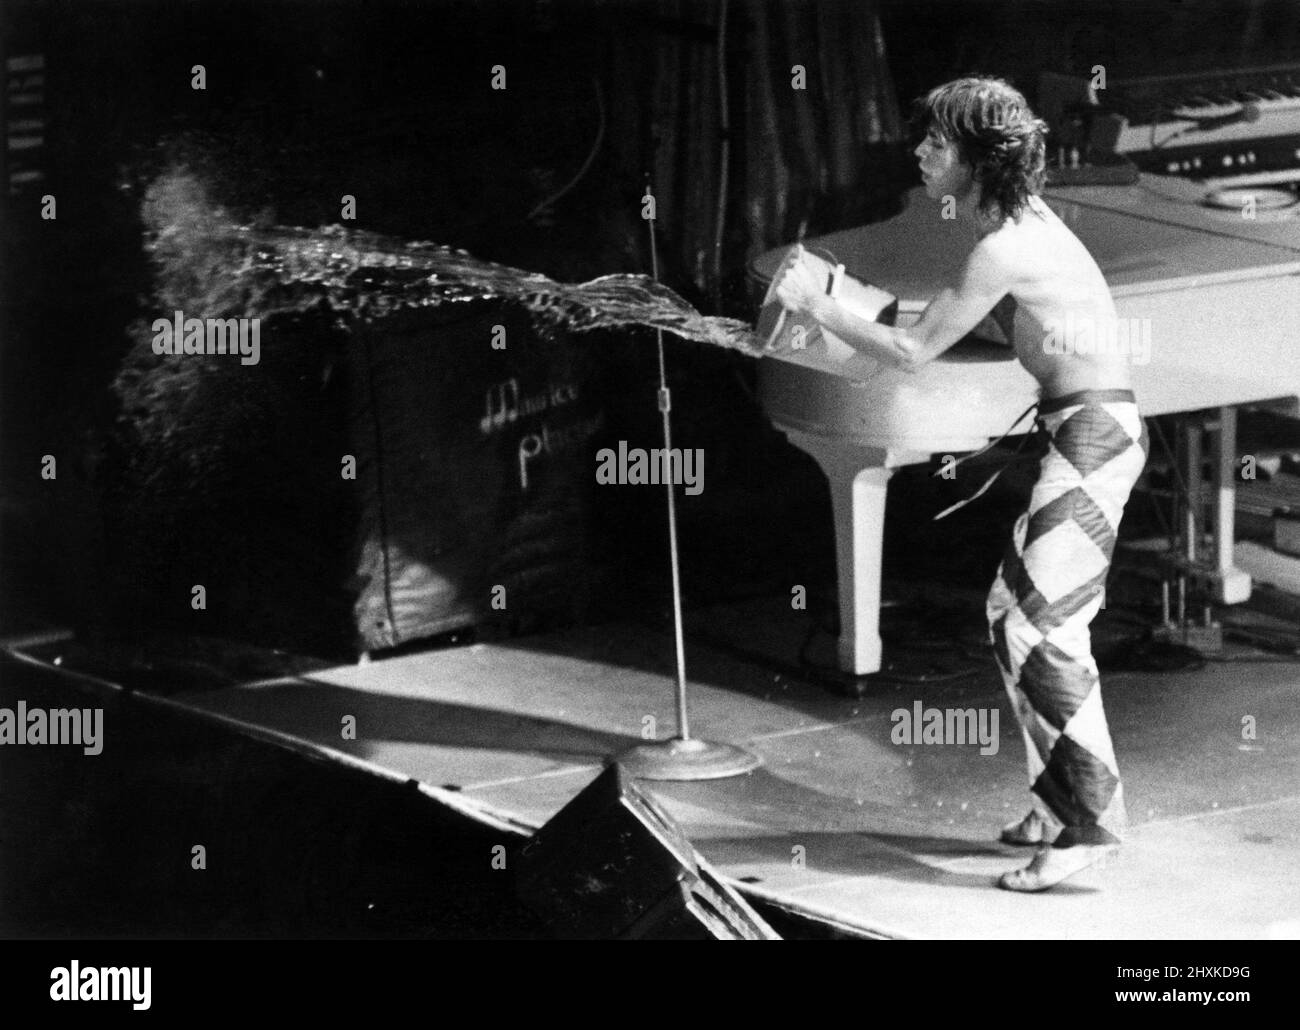 Cool It Man! Die Stones sind zurück: Rockkönig Mick Jagger und seine Rolling Stones sind am Montagabend nach Großbritannien zurückgekehrt. Und 3.500 Fans brauchten bei ihrem ersten Konzerttermin kein Aufwärmen. Rolling Stone Mick Jagger wirft Wasser über die Fans. Mai 1976 P029687 Stockfoto